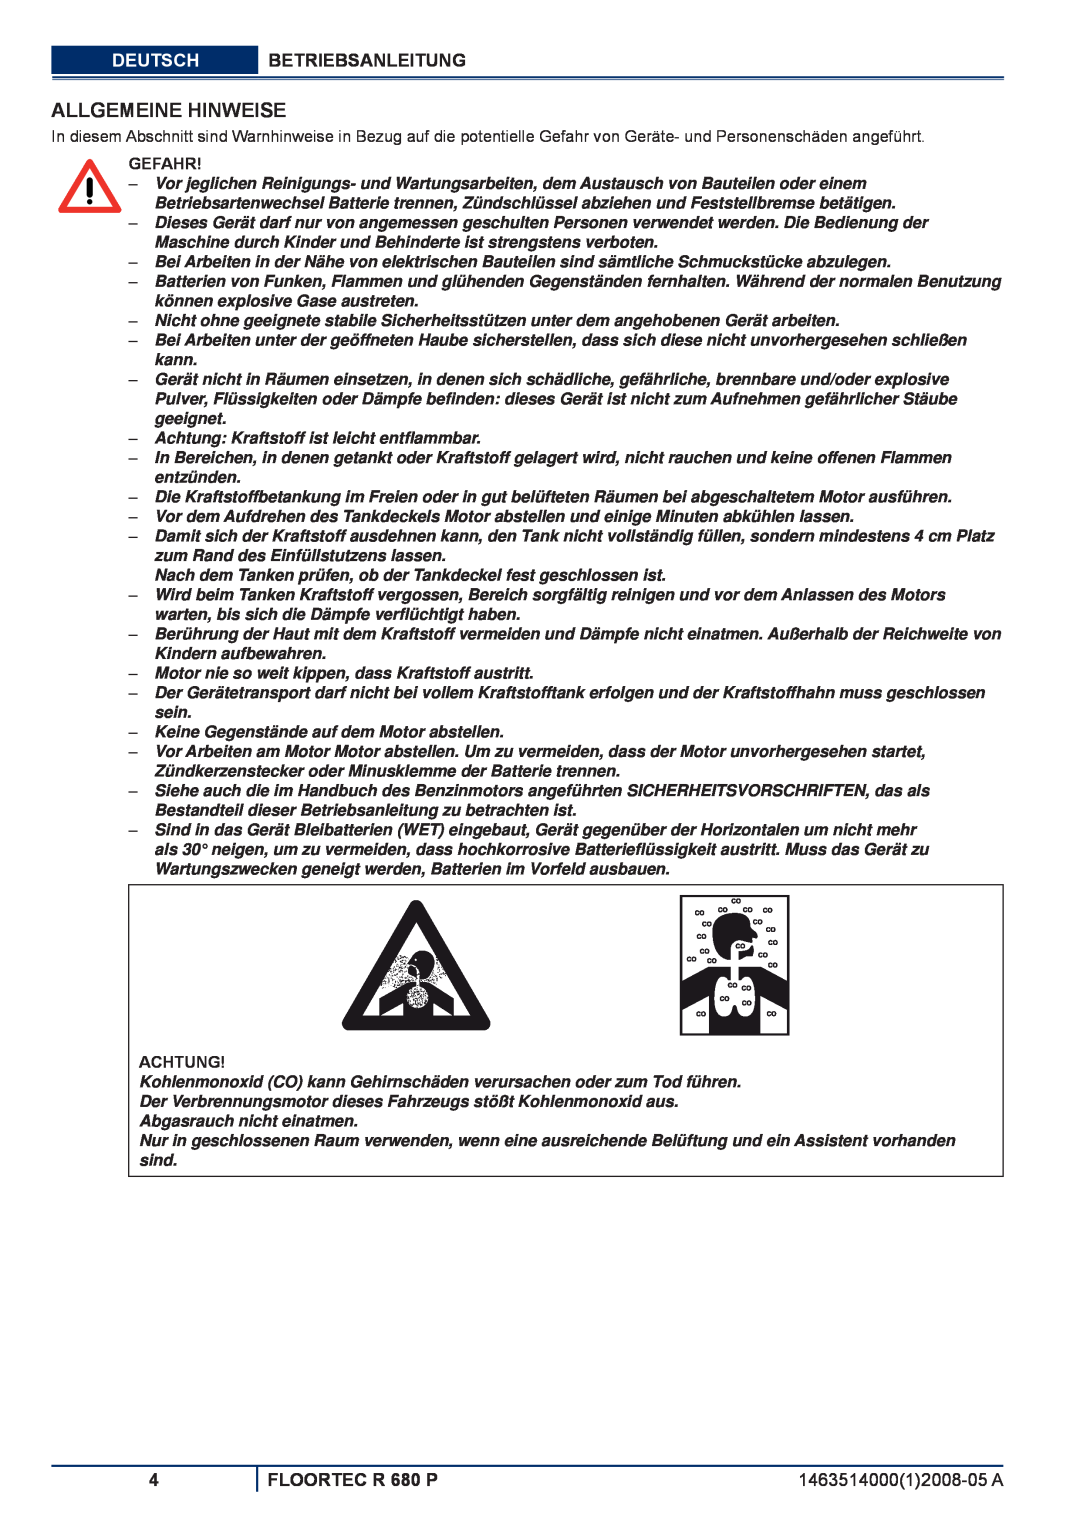 Nilfisk-ALTO manuel dutilisation Allgemeine Hinweise, Deutsch Betriebsanleitung, FLOORTEC R 680 P, Gefahr, Achtung 